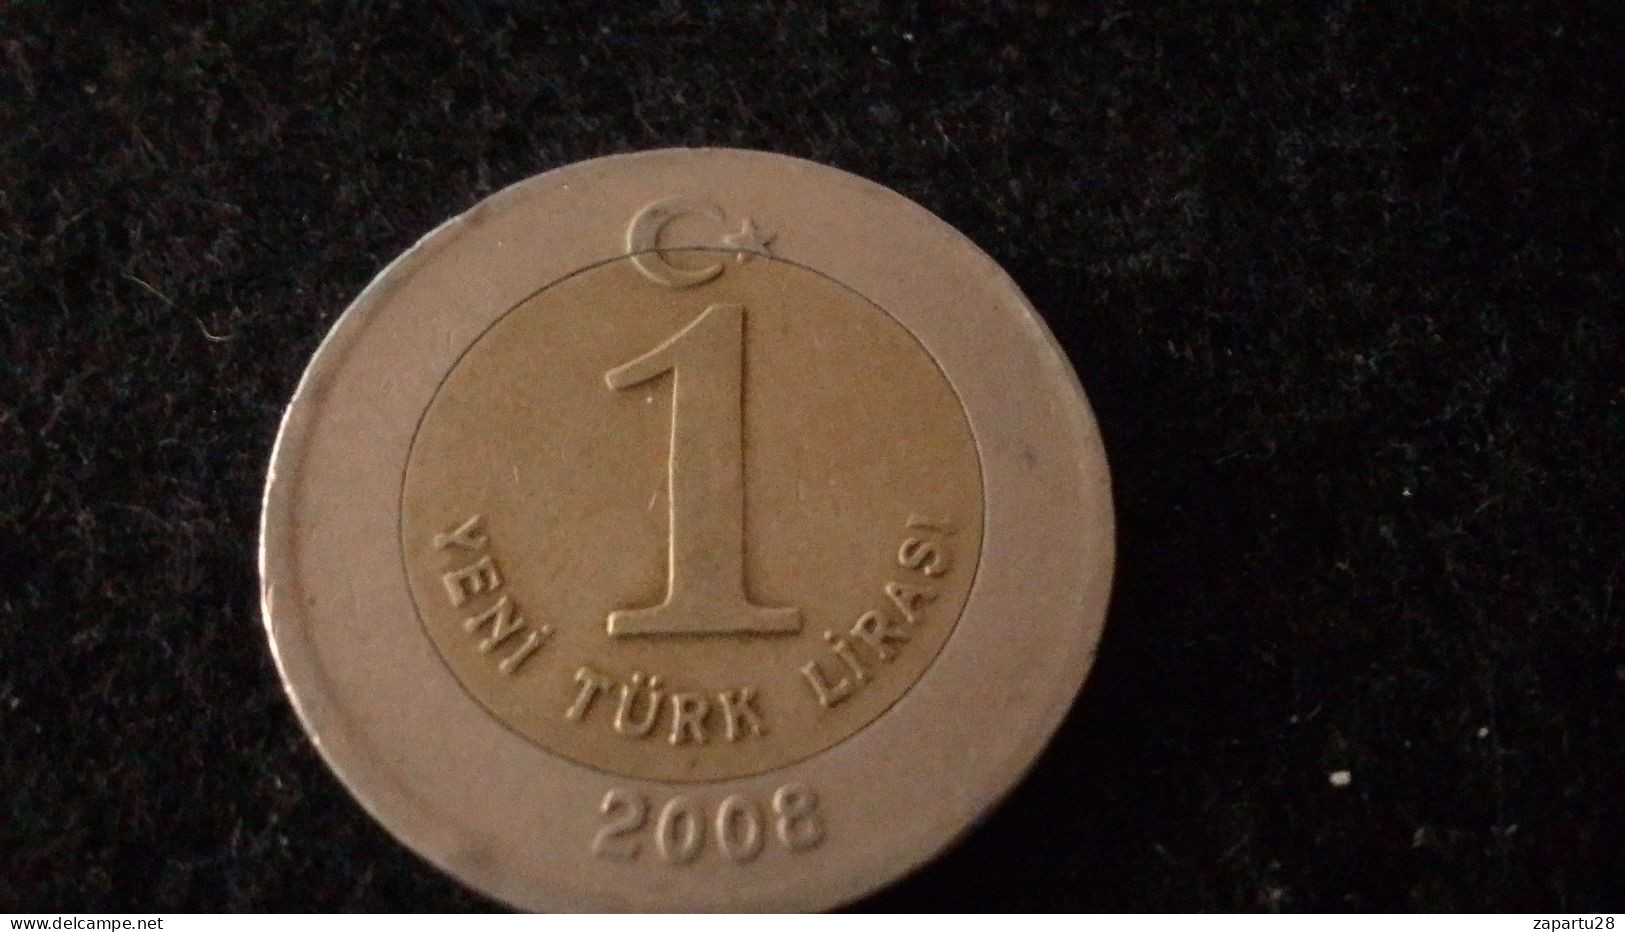 TÜRKİYE - 2008 - 1 YENİ TÜEK LİRASI - Turquie